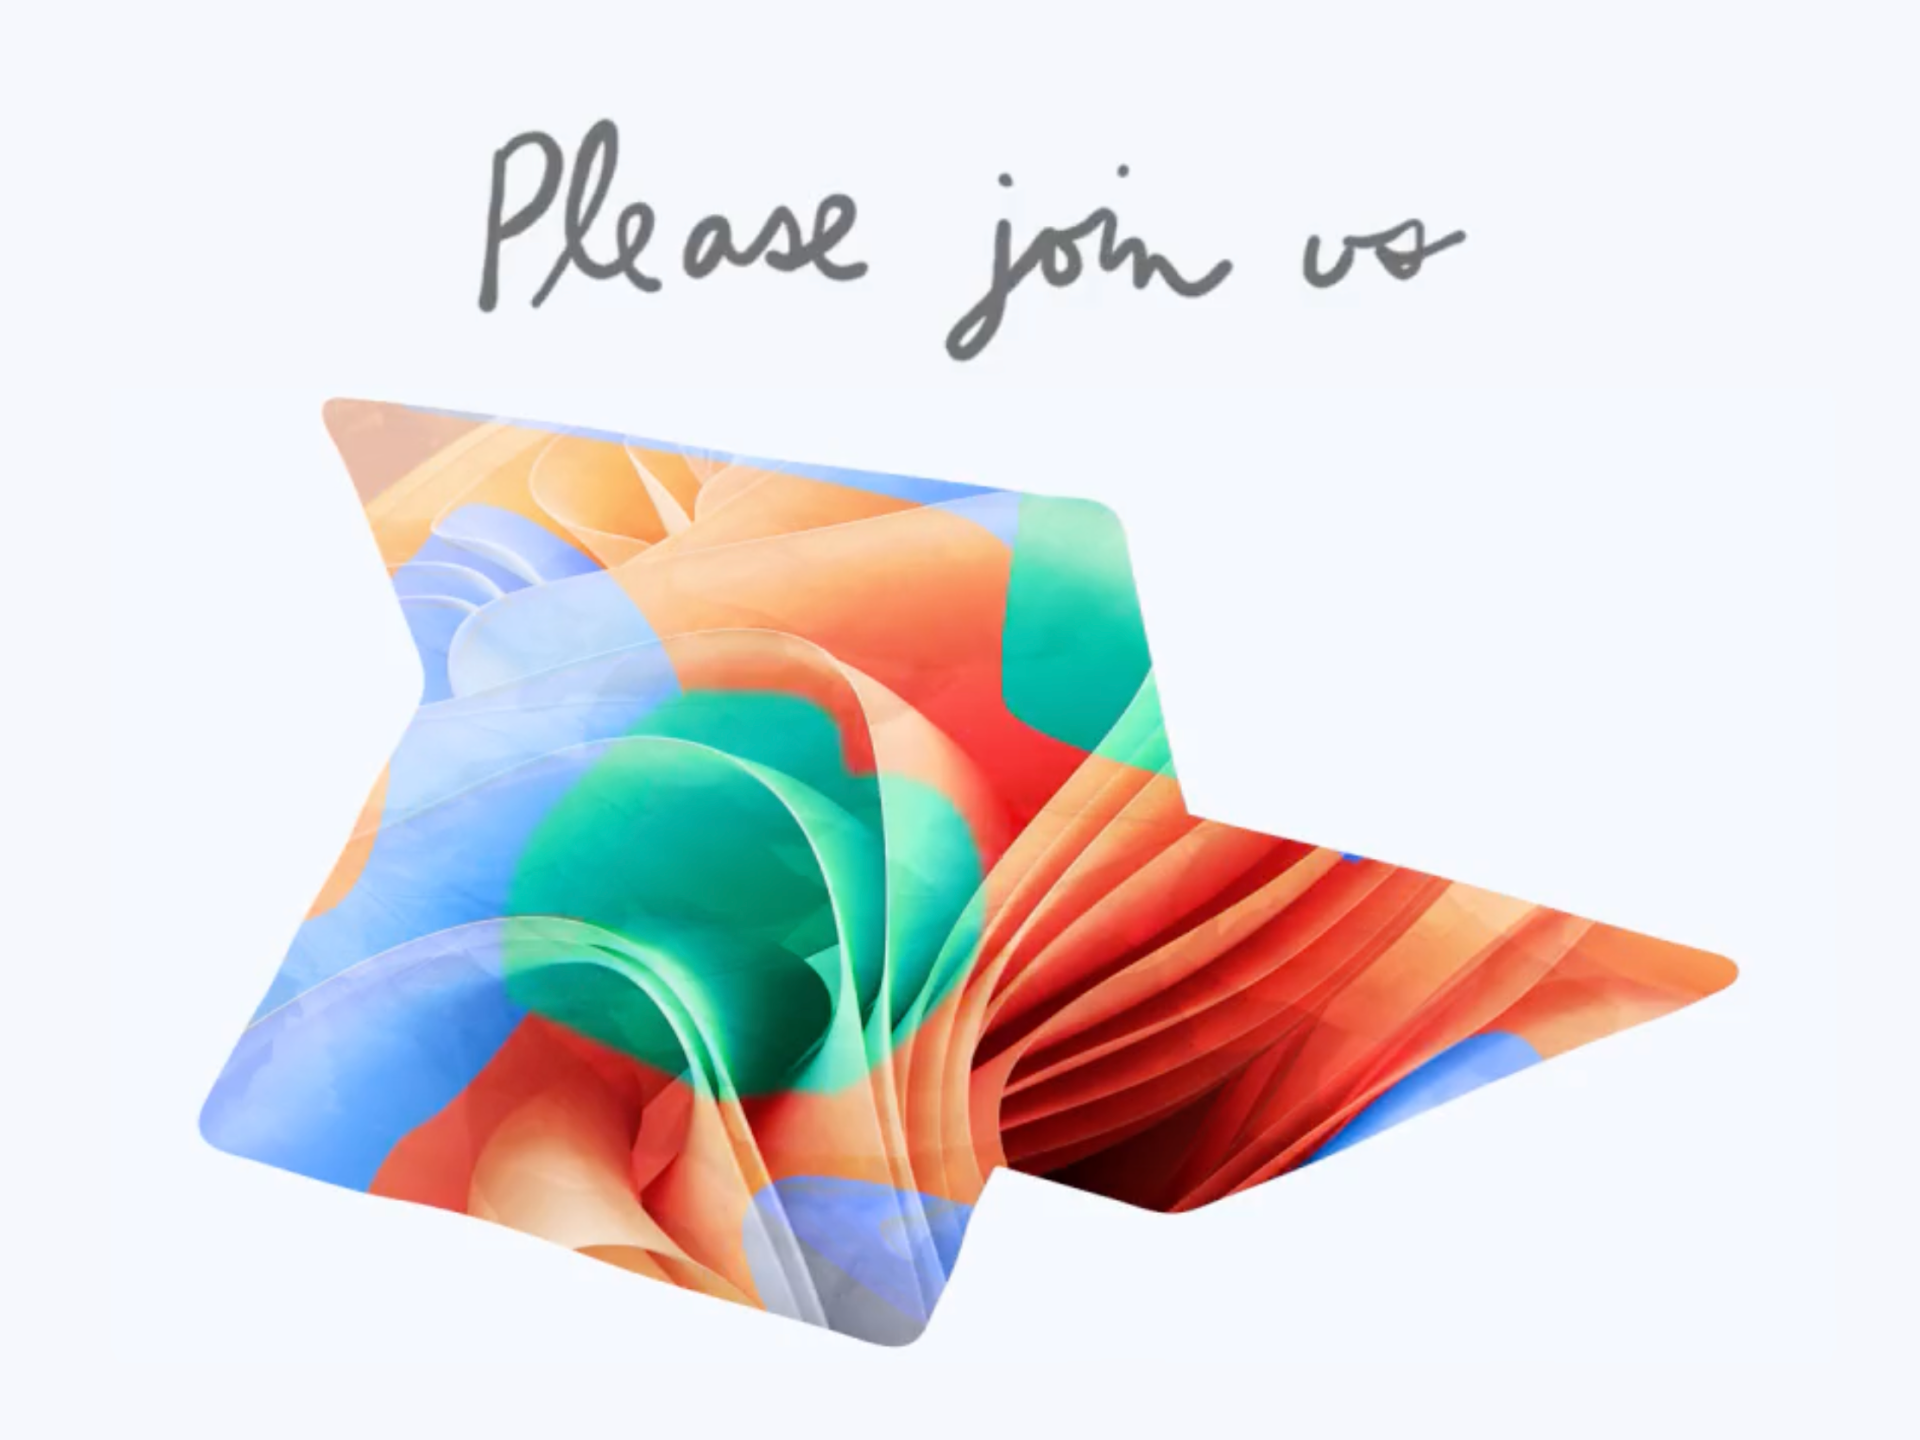 Microsoft Surface Event invite 2022 2